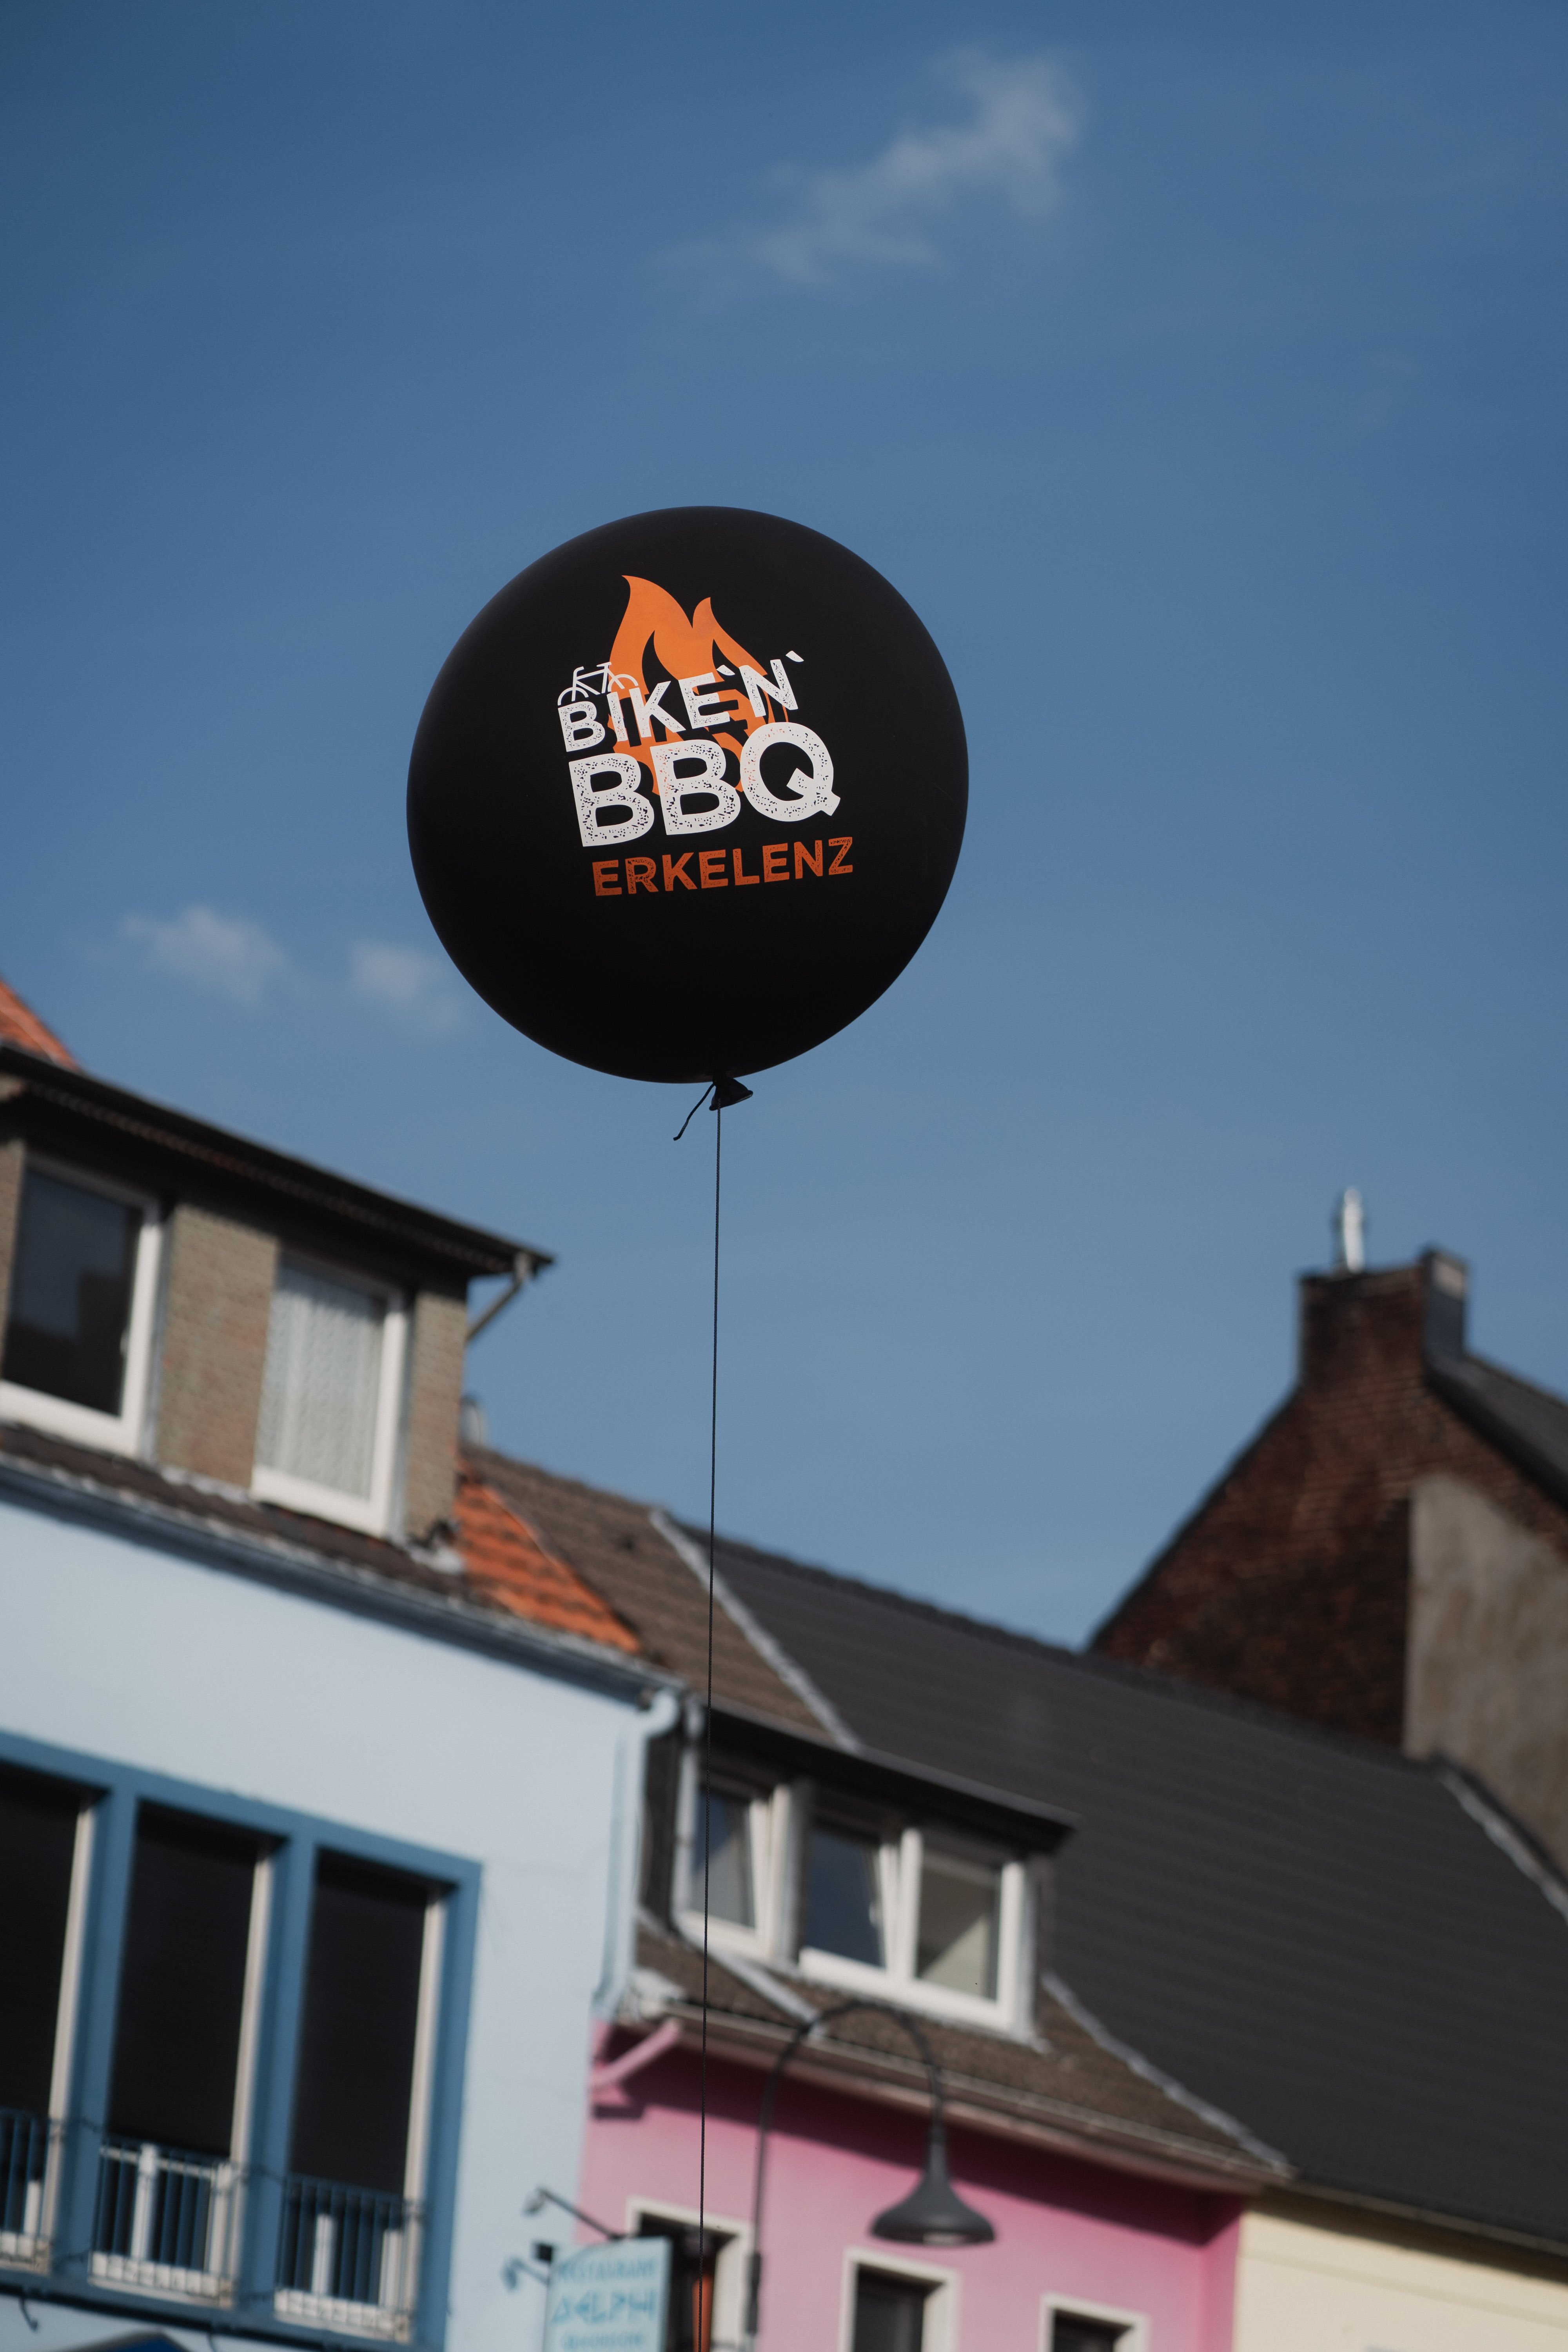 Luftballon mit der Aufschrift "Bike'n'BBQ Erkelenz"